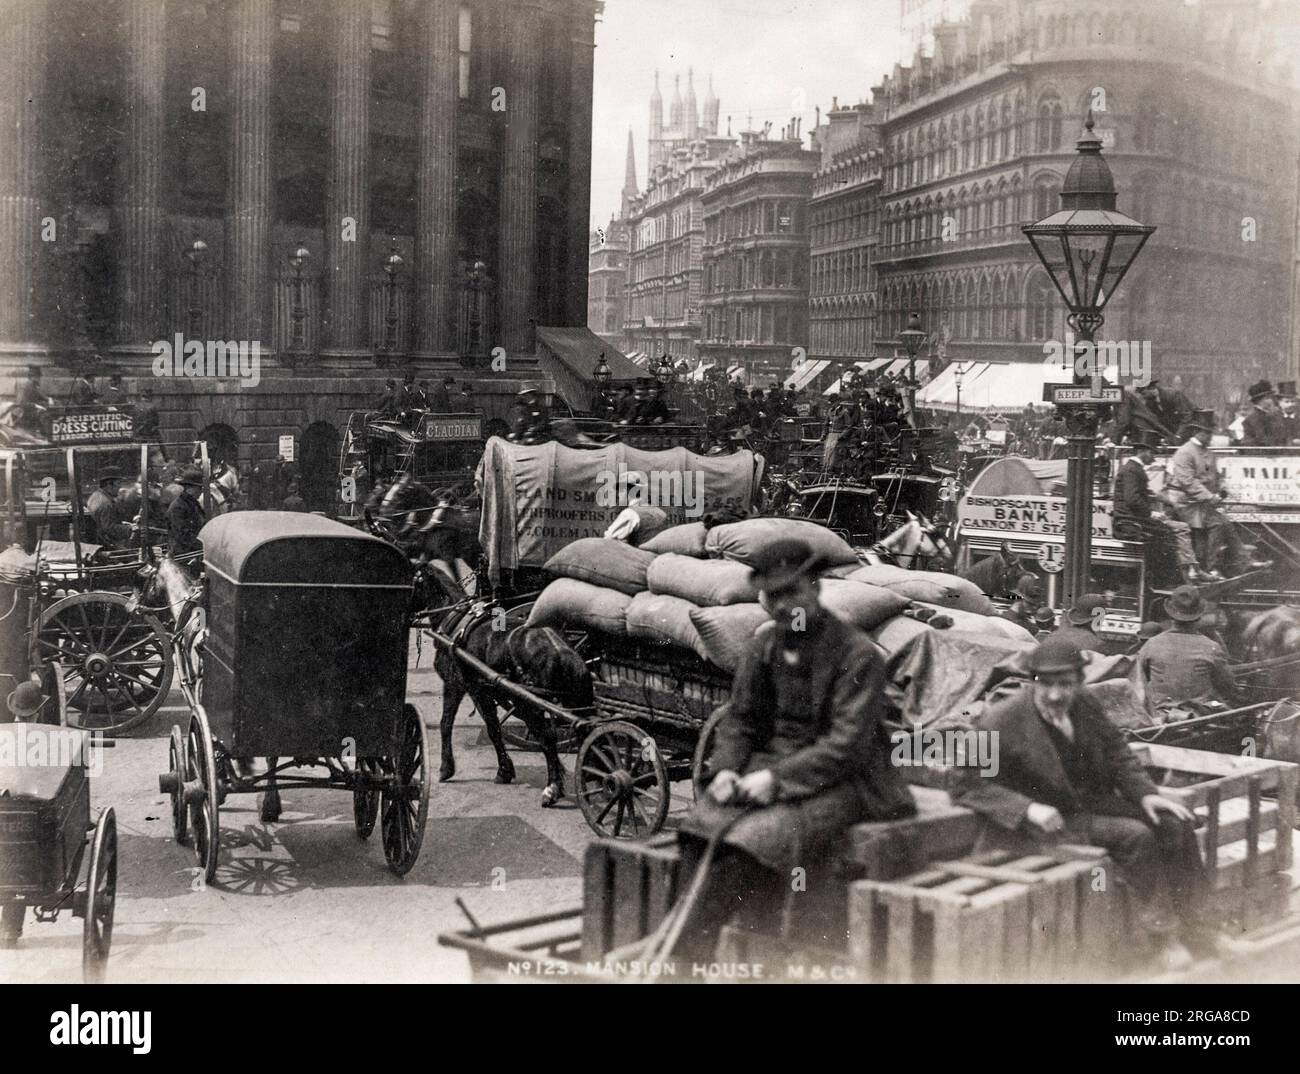 Vue à l'extérieur de la Mansion House Londres, étouffée par le trafic tiré par des chevaux. Photographie vintage du 19th siècle Banque D'Images